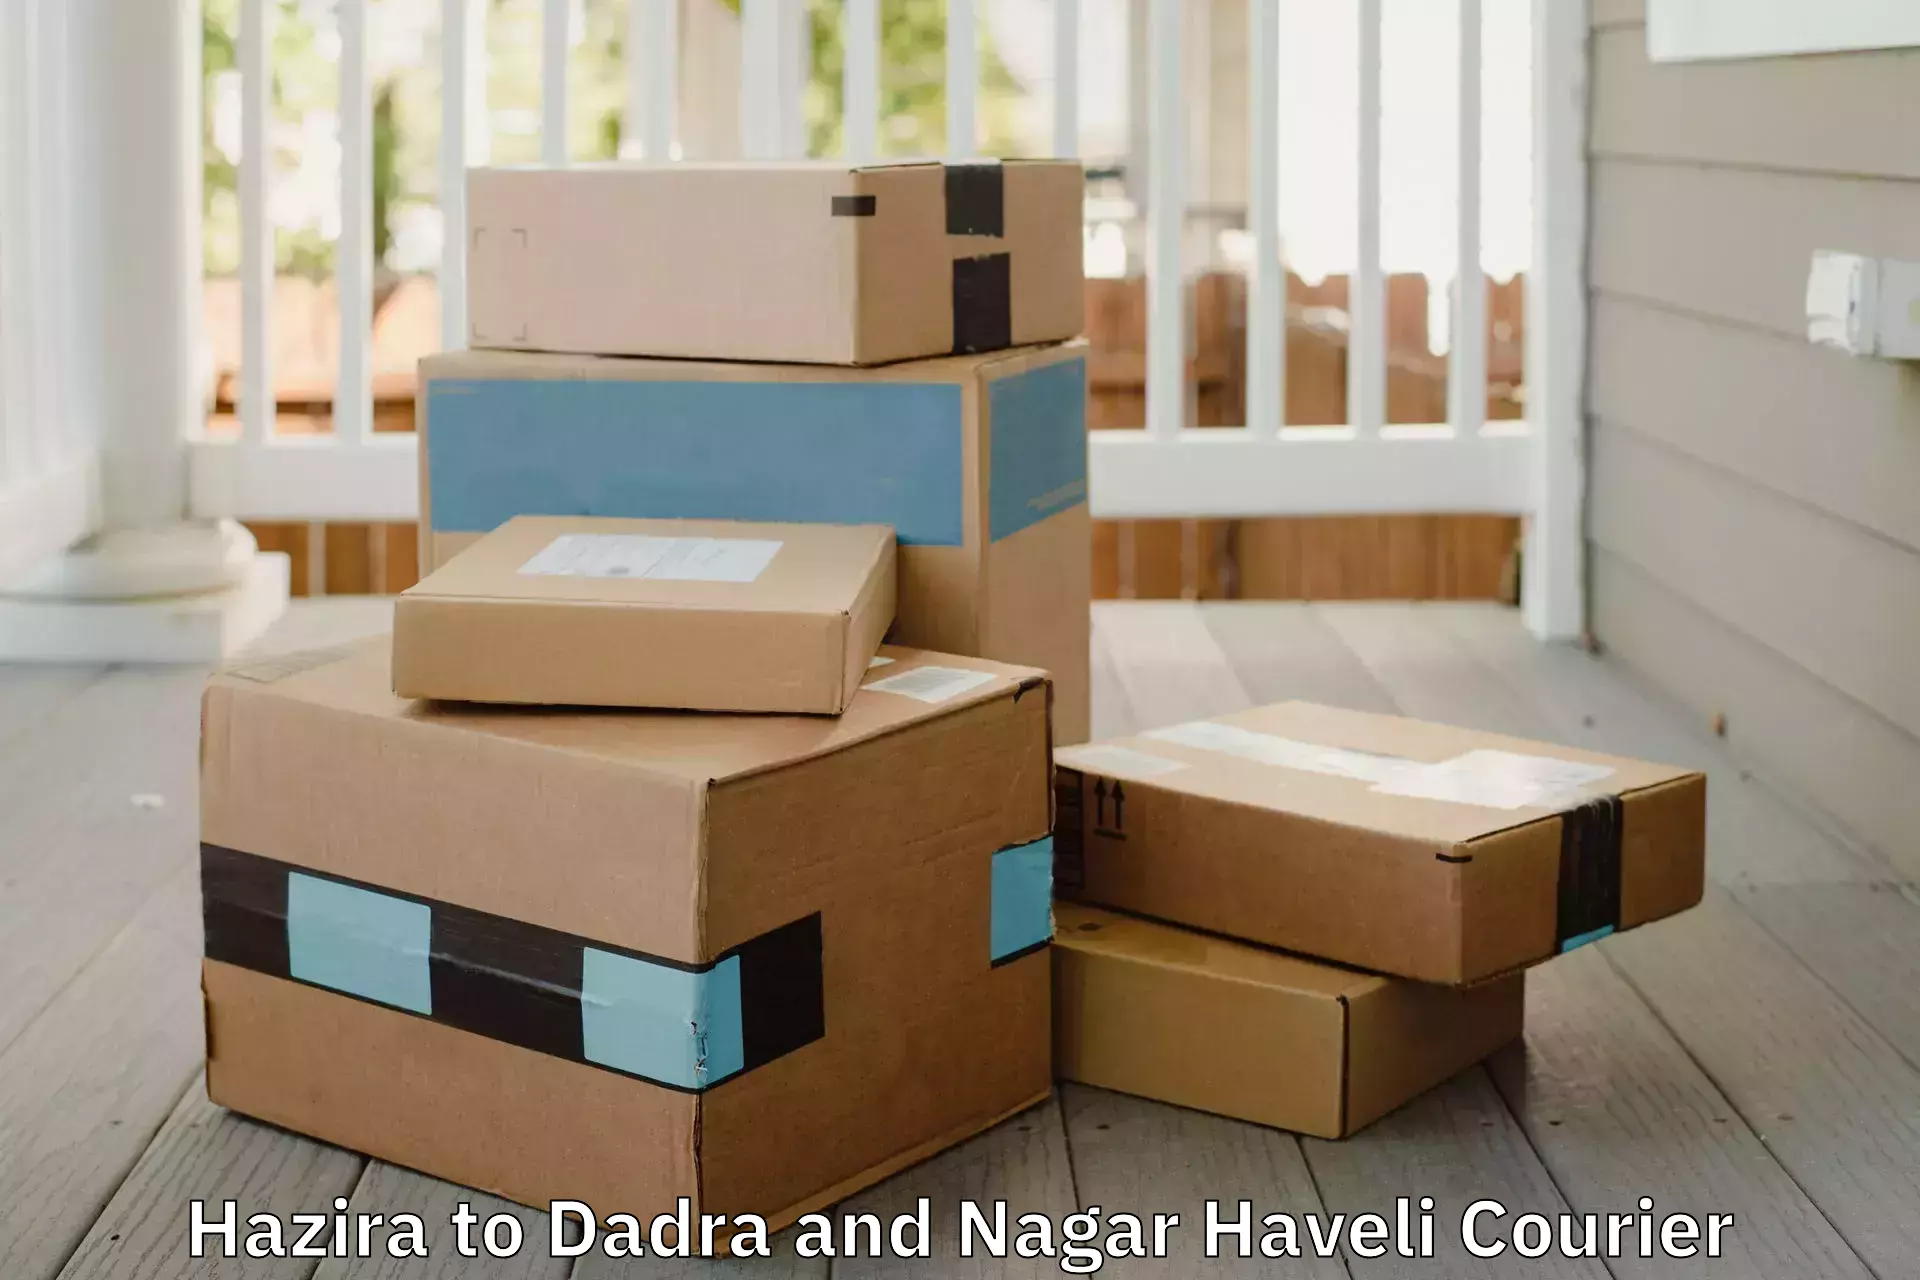 Household goods transport service Hazira to Dadra and Nagar Haveli